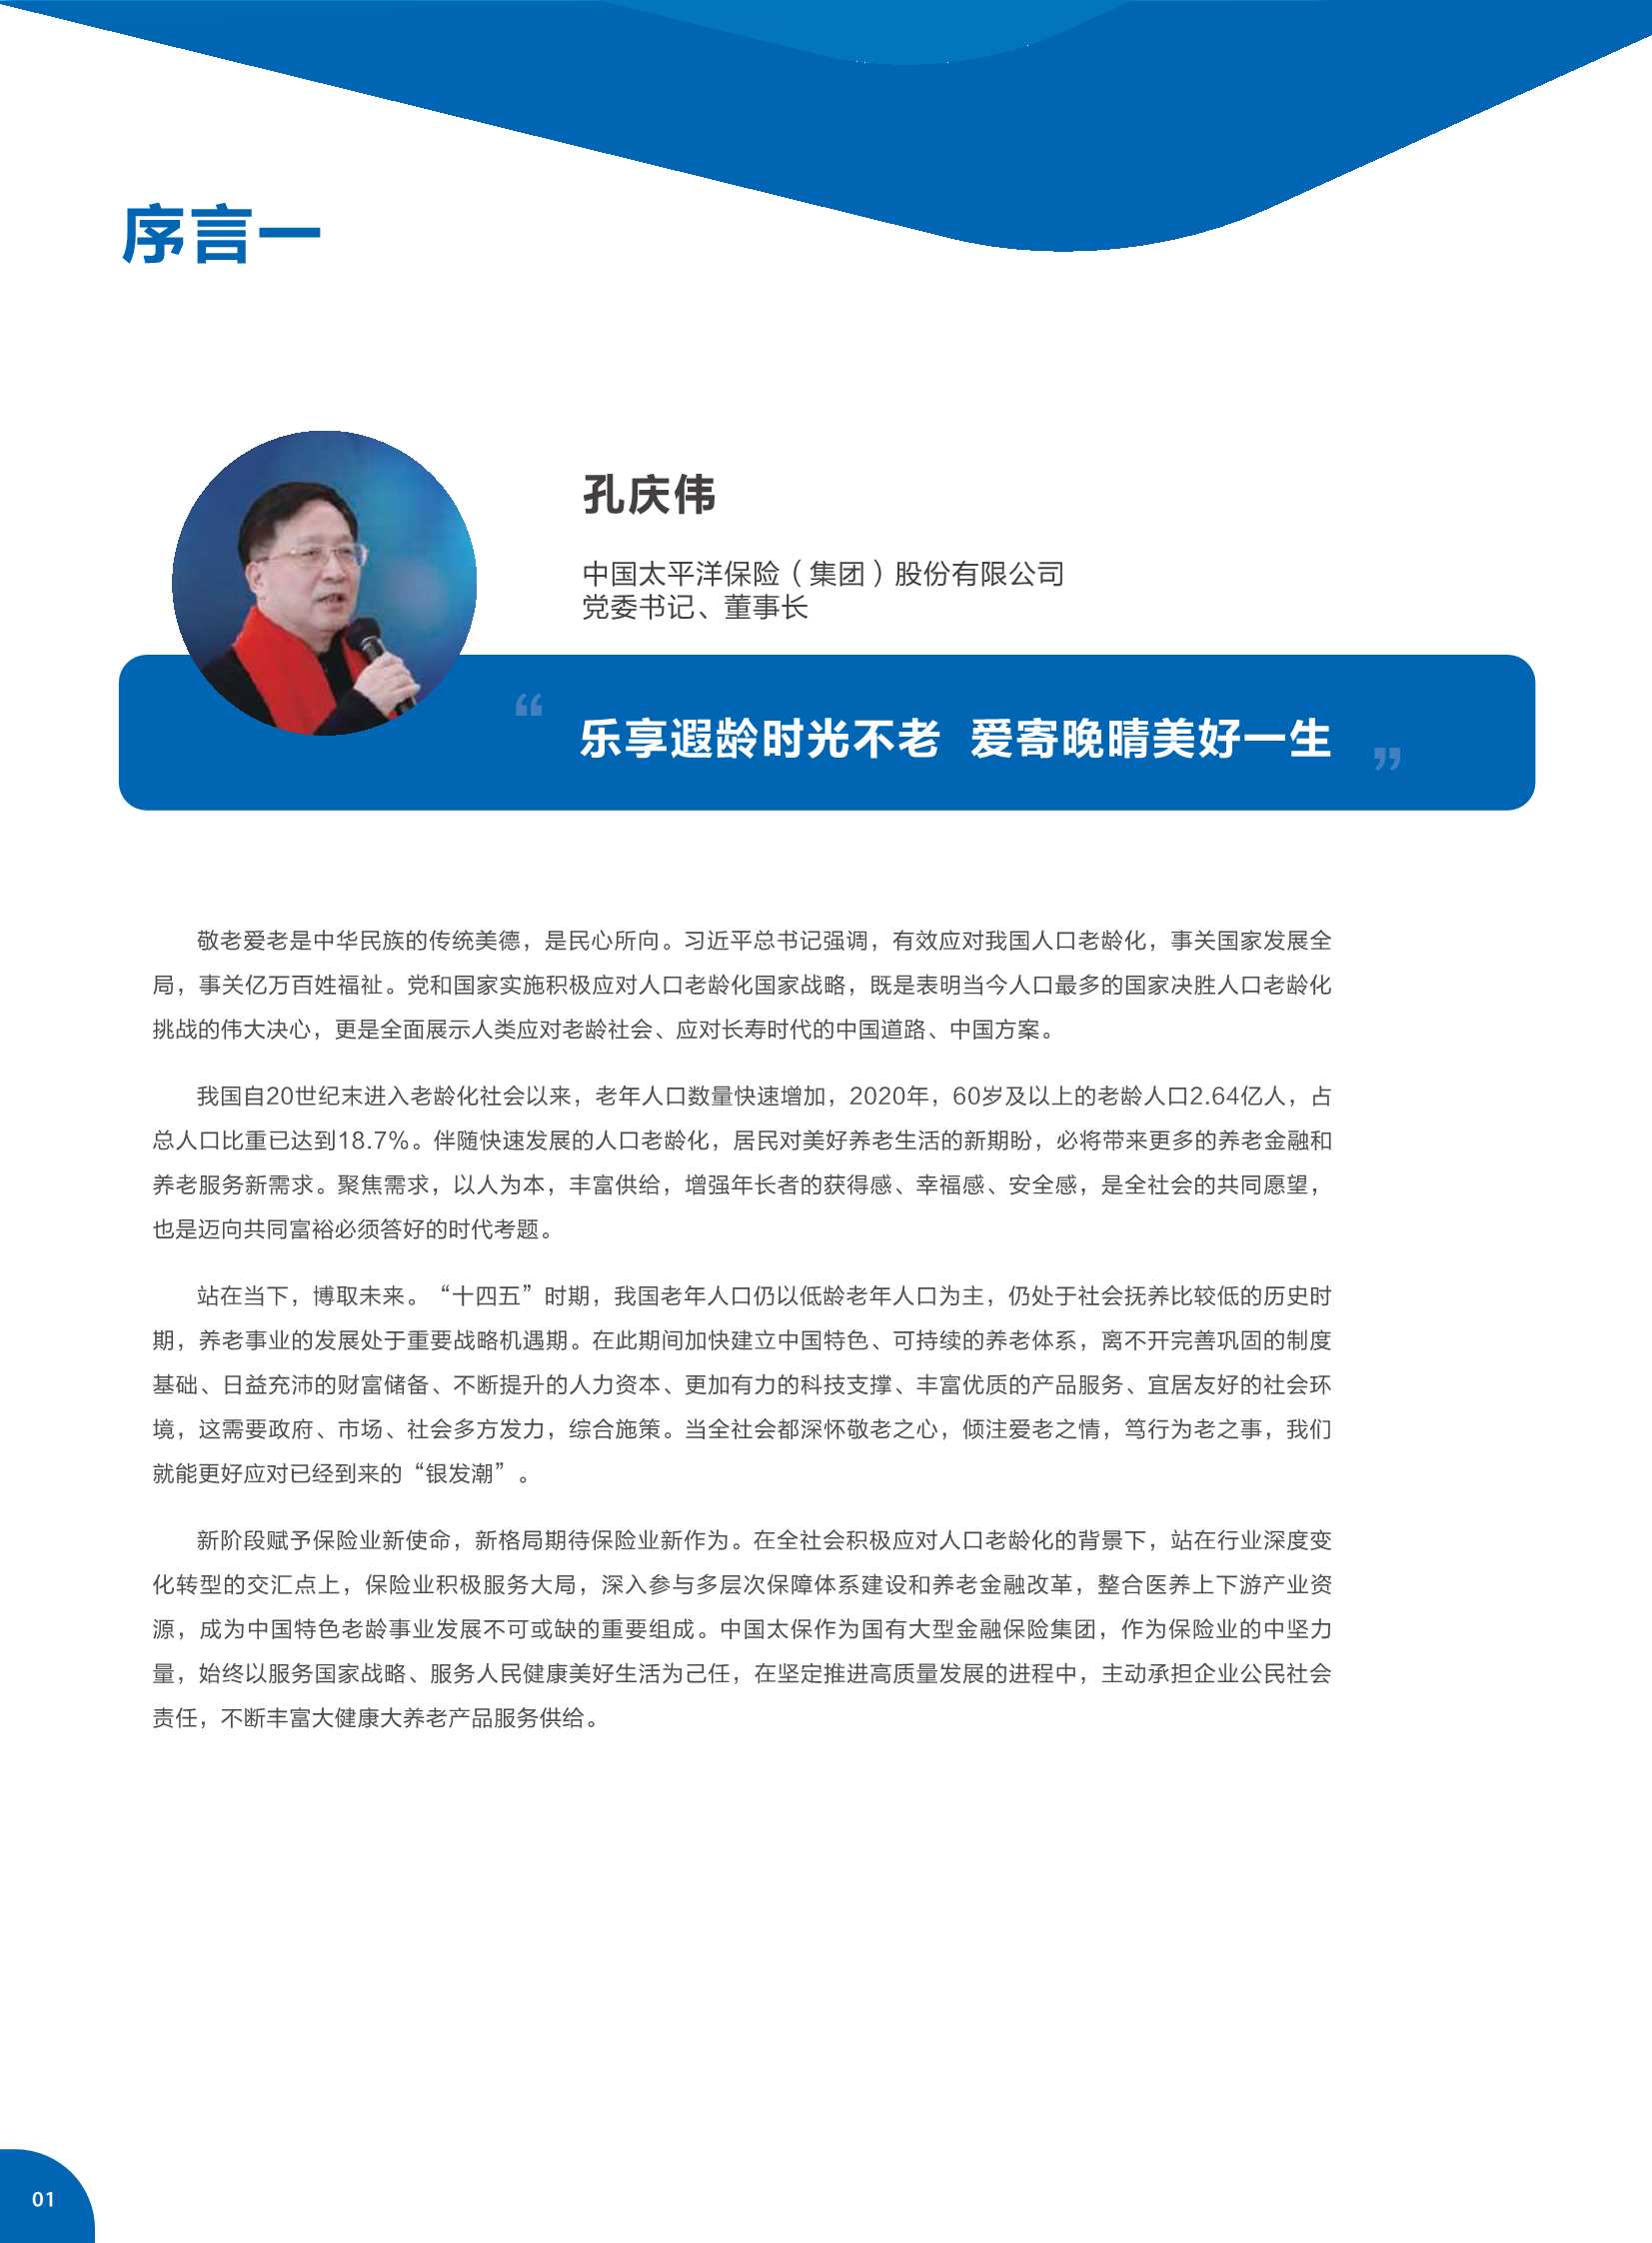 中国太保&社科院-居民养老规划与风险管理白皮书-2021.11-75页